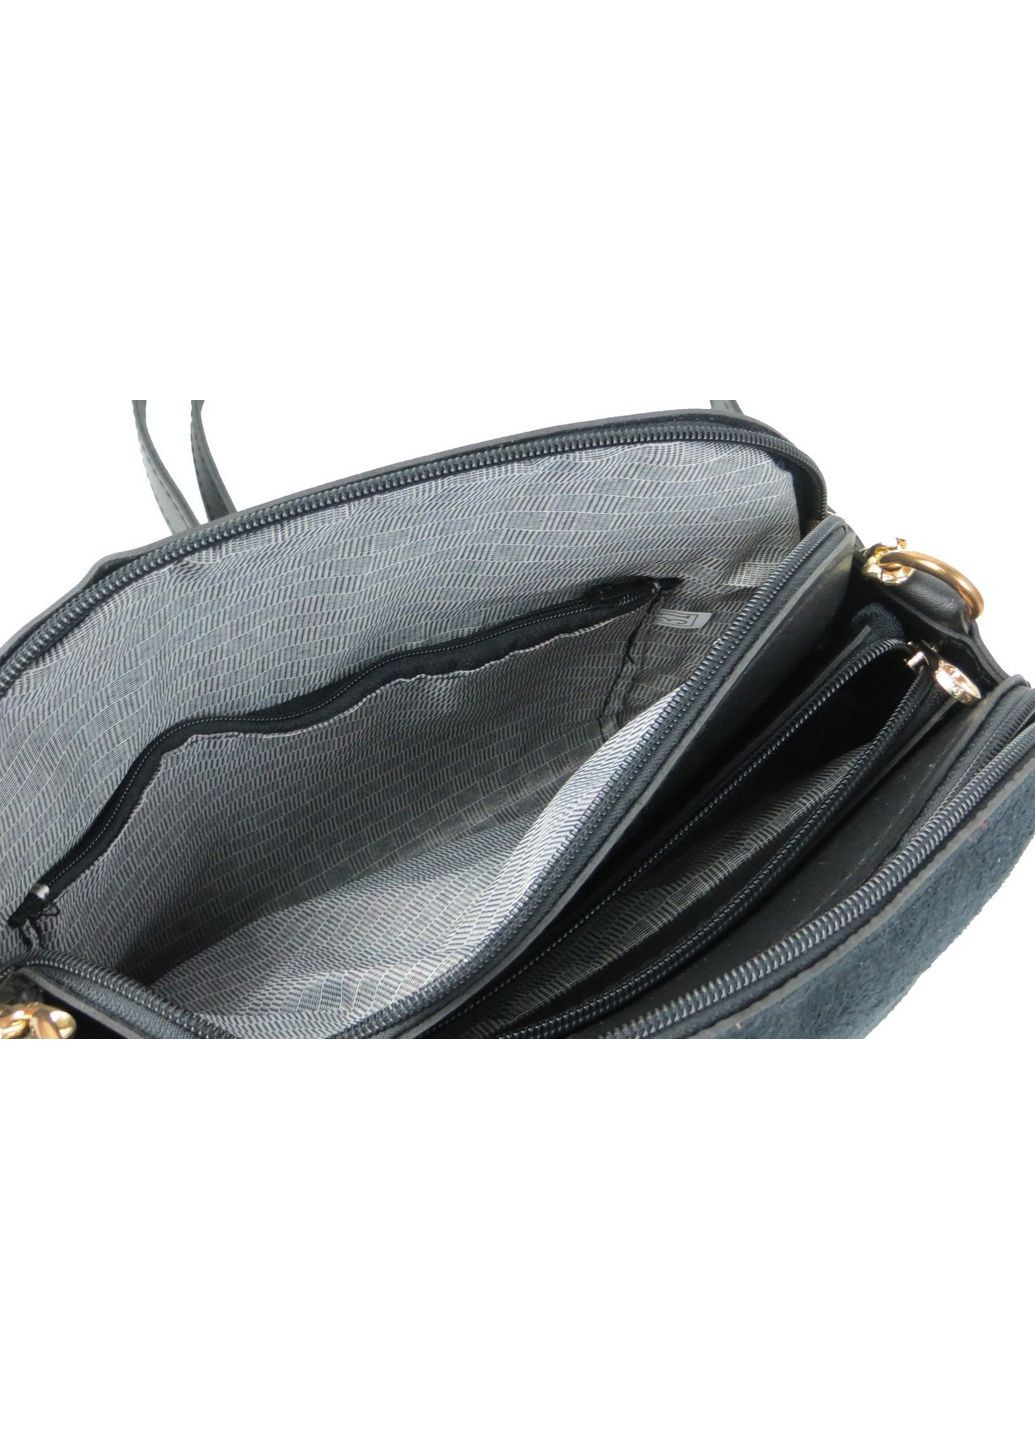 Небольшая женская сумка на плечо из эко кожи 25х18х12 см Fashion (288047093)